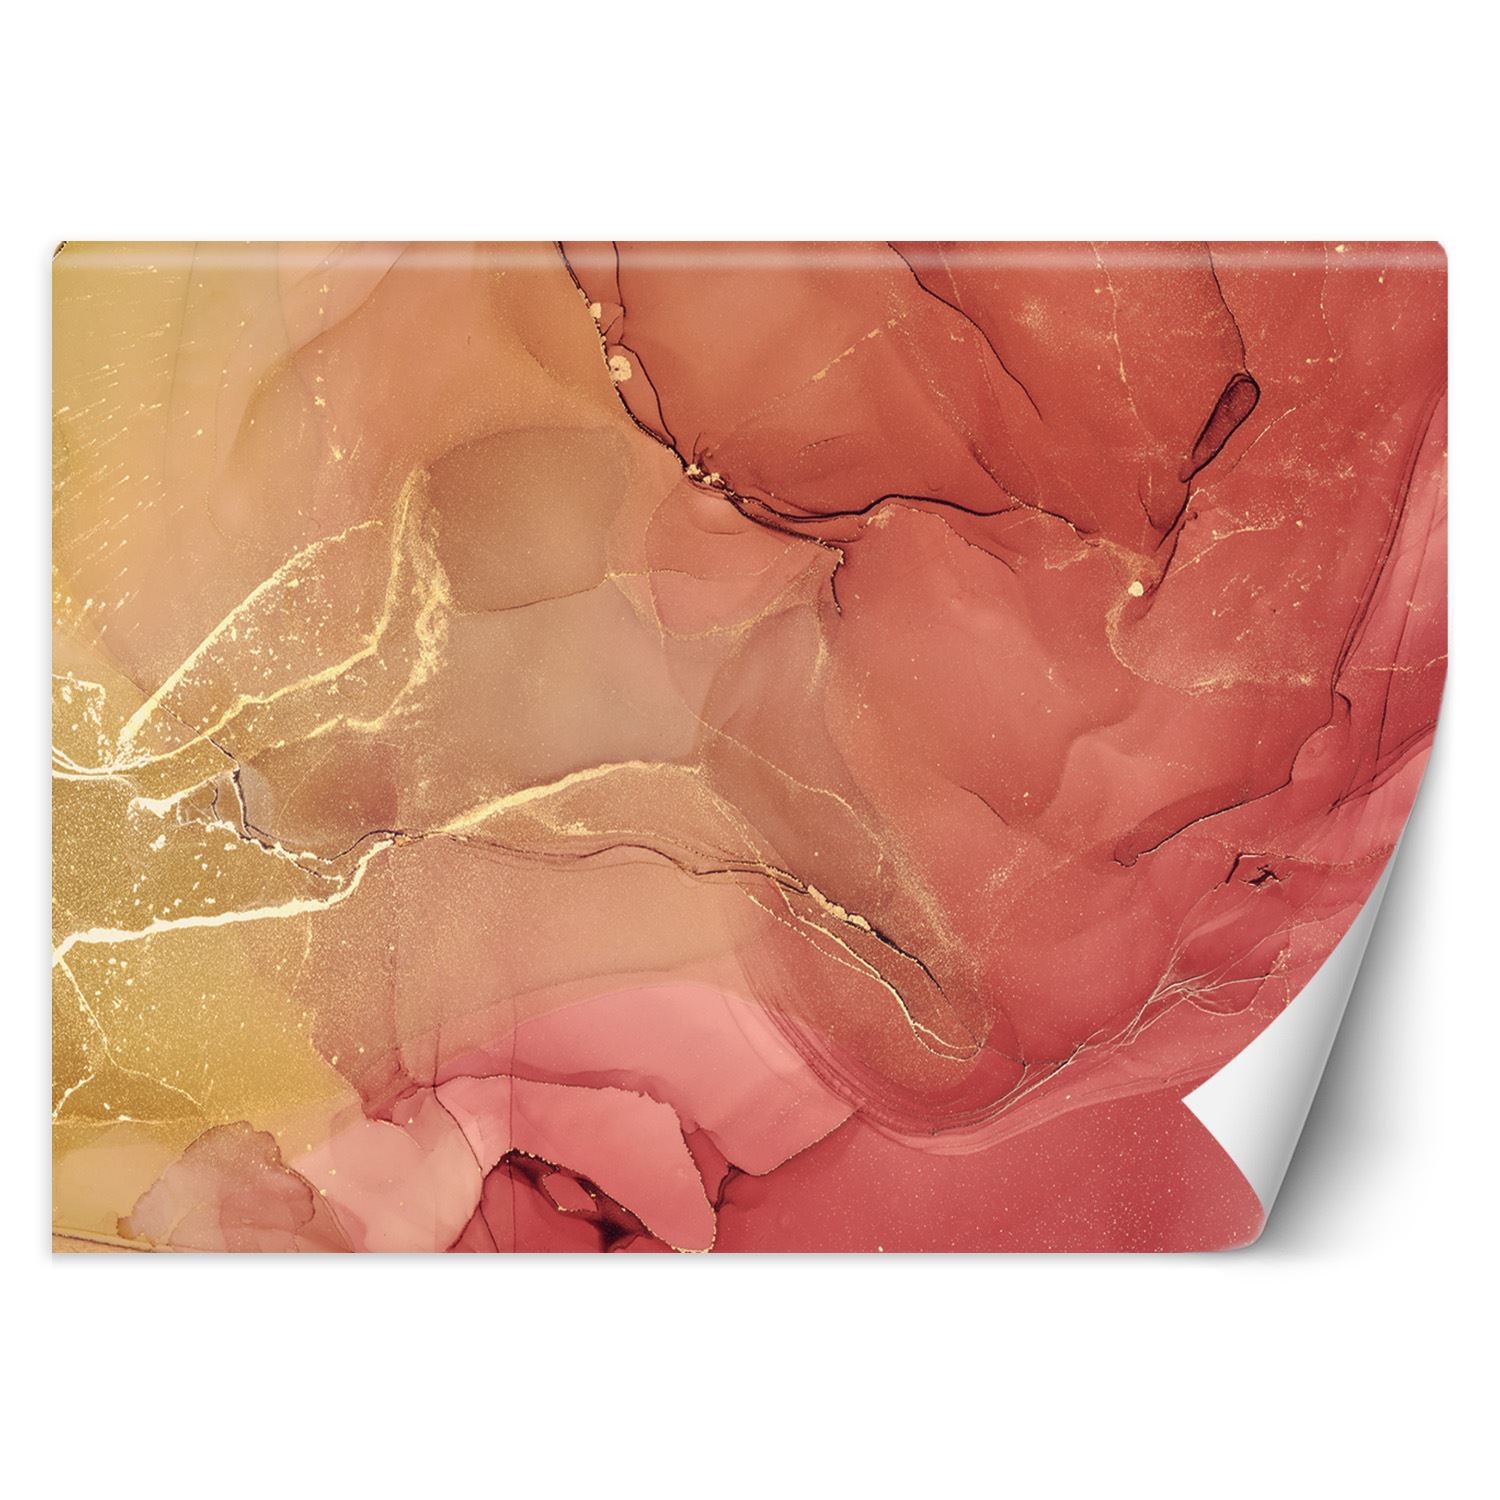 Trend24 – Behang – Abstract In Delicate Roze – Vliesbehang – Fotobehang 3D – Behang Woonkamer – 350×245 cm – Incl. behanglijm